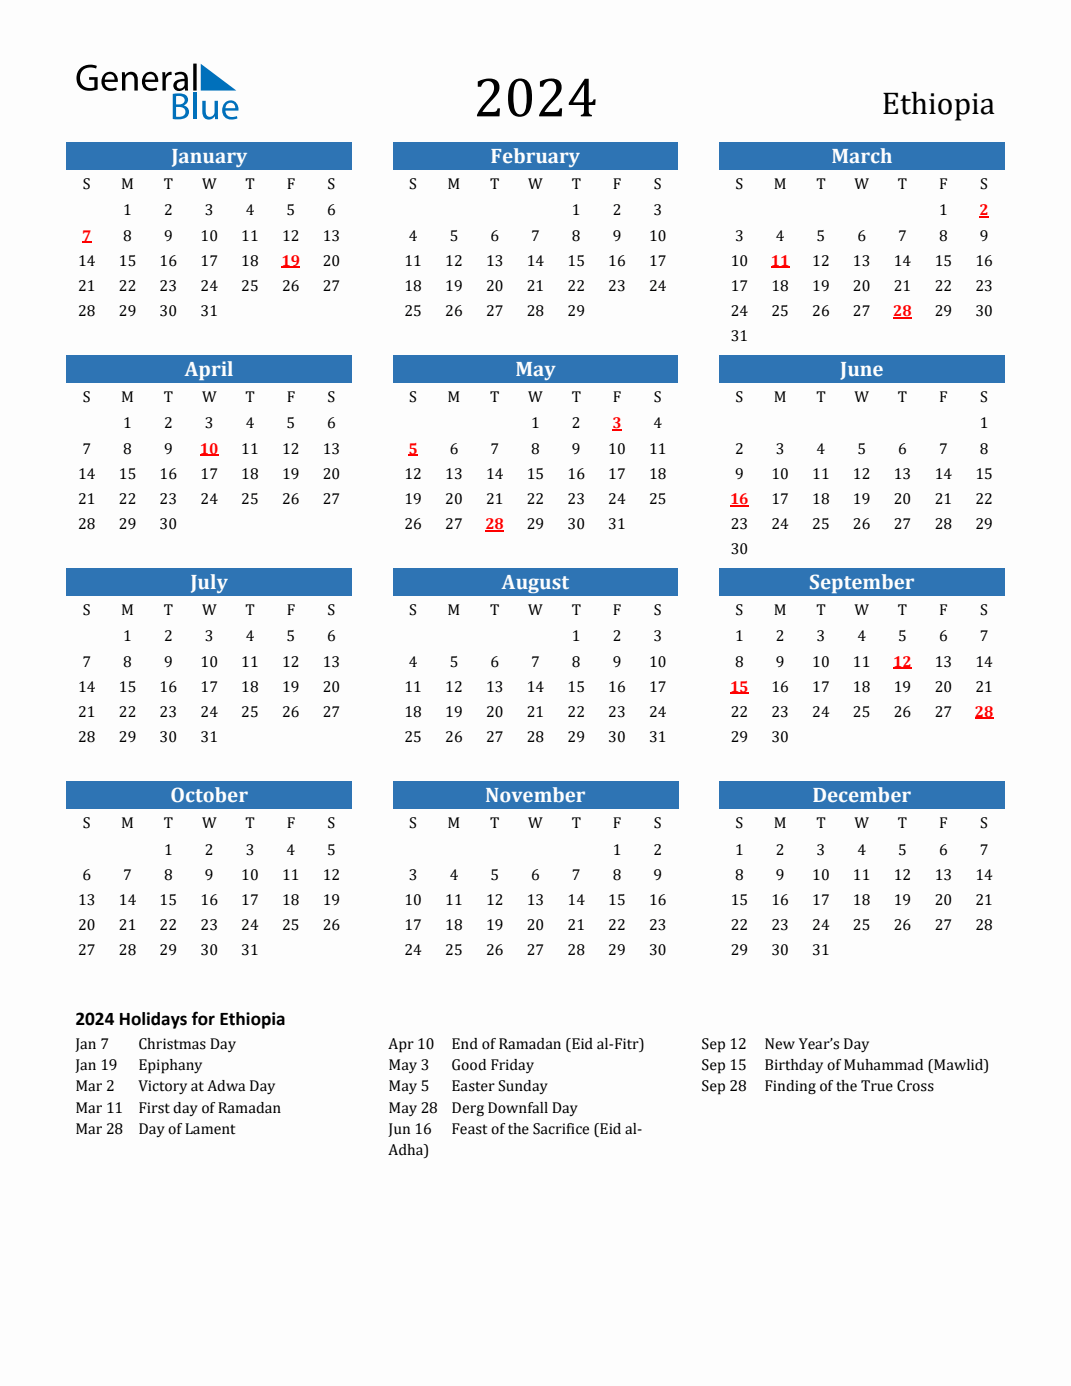 Ethiopian Fasting Calendar 2024 Aurel Caresse